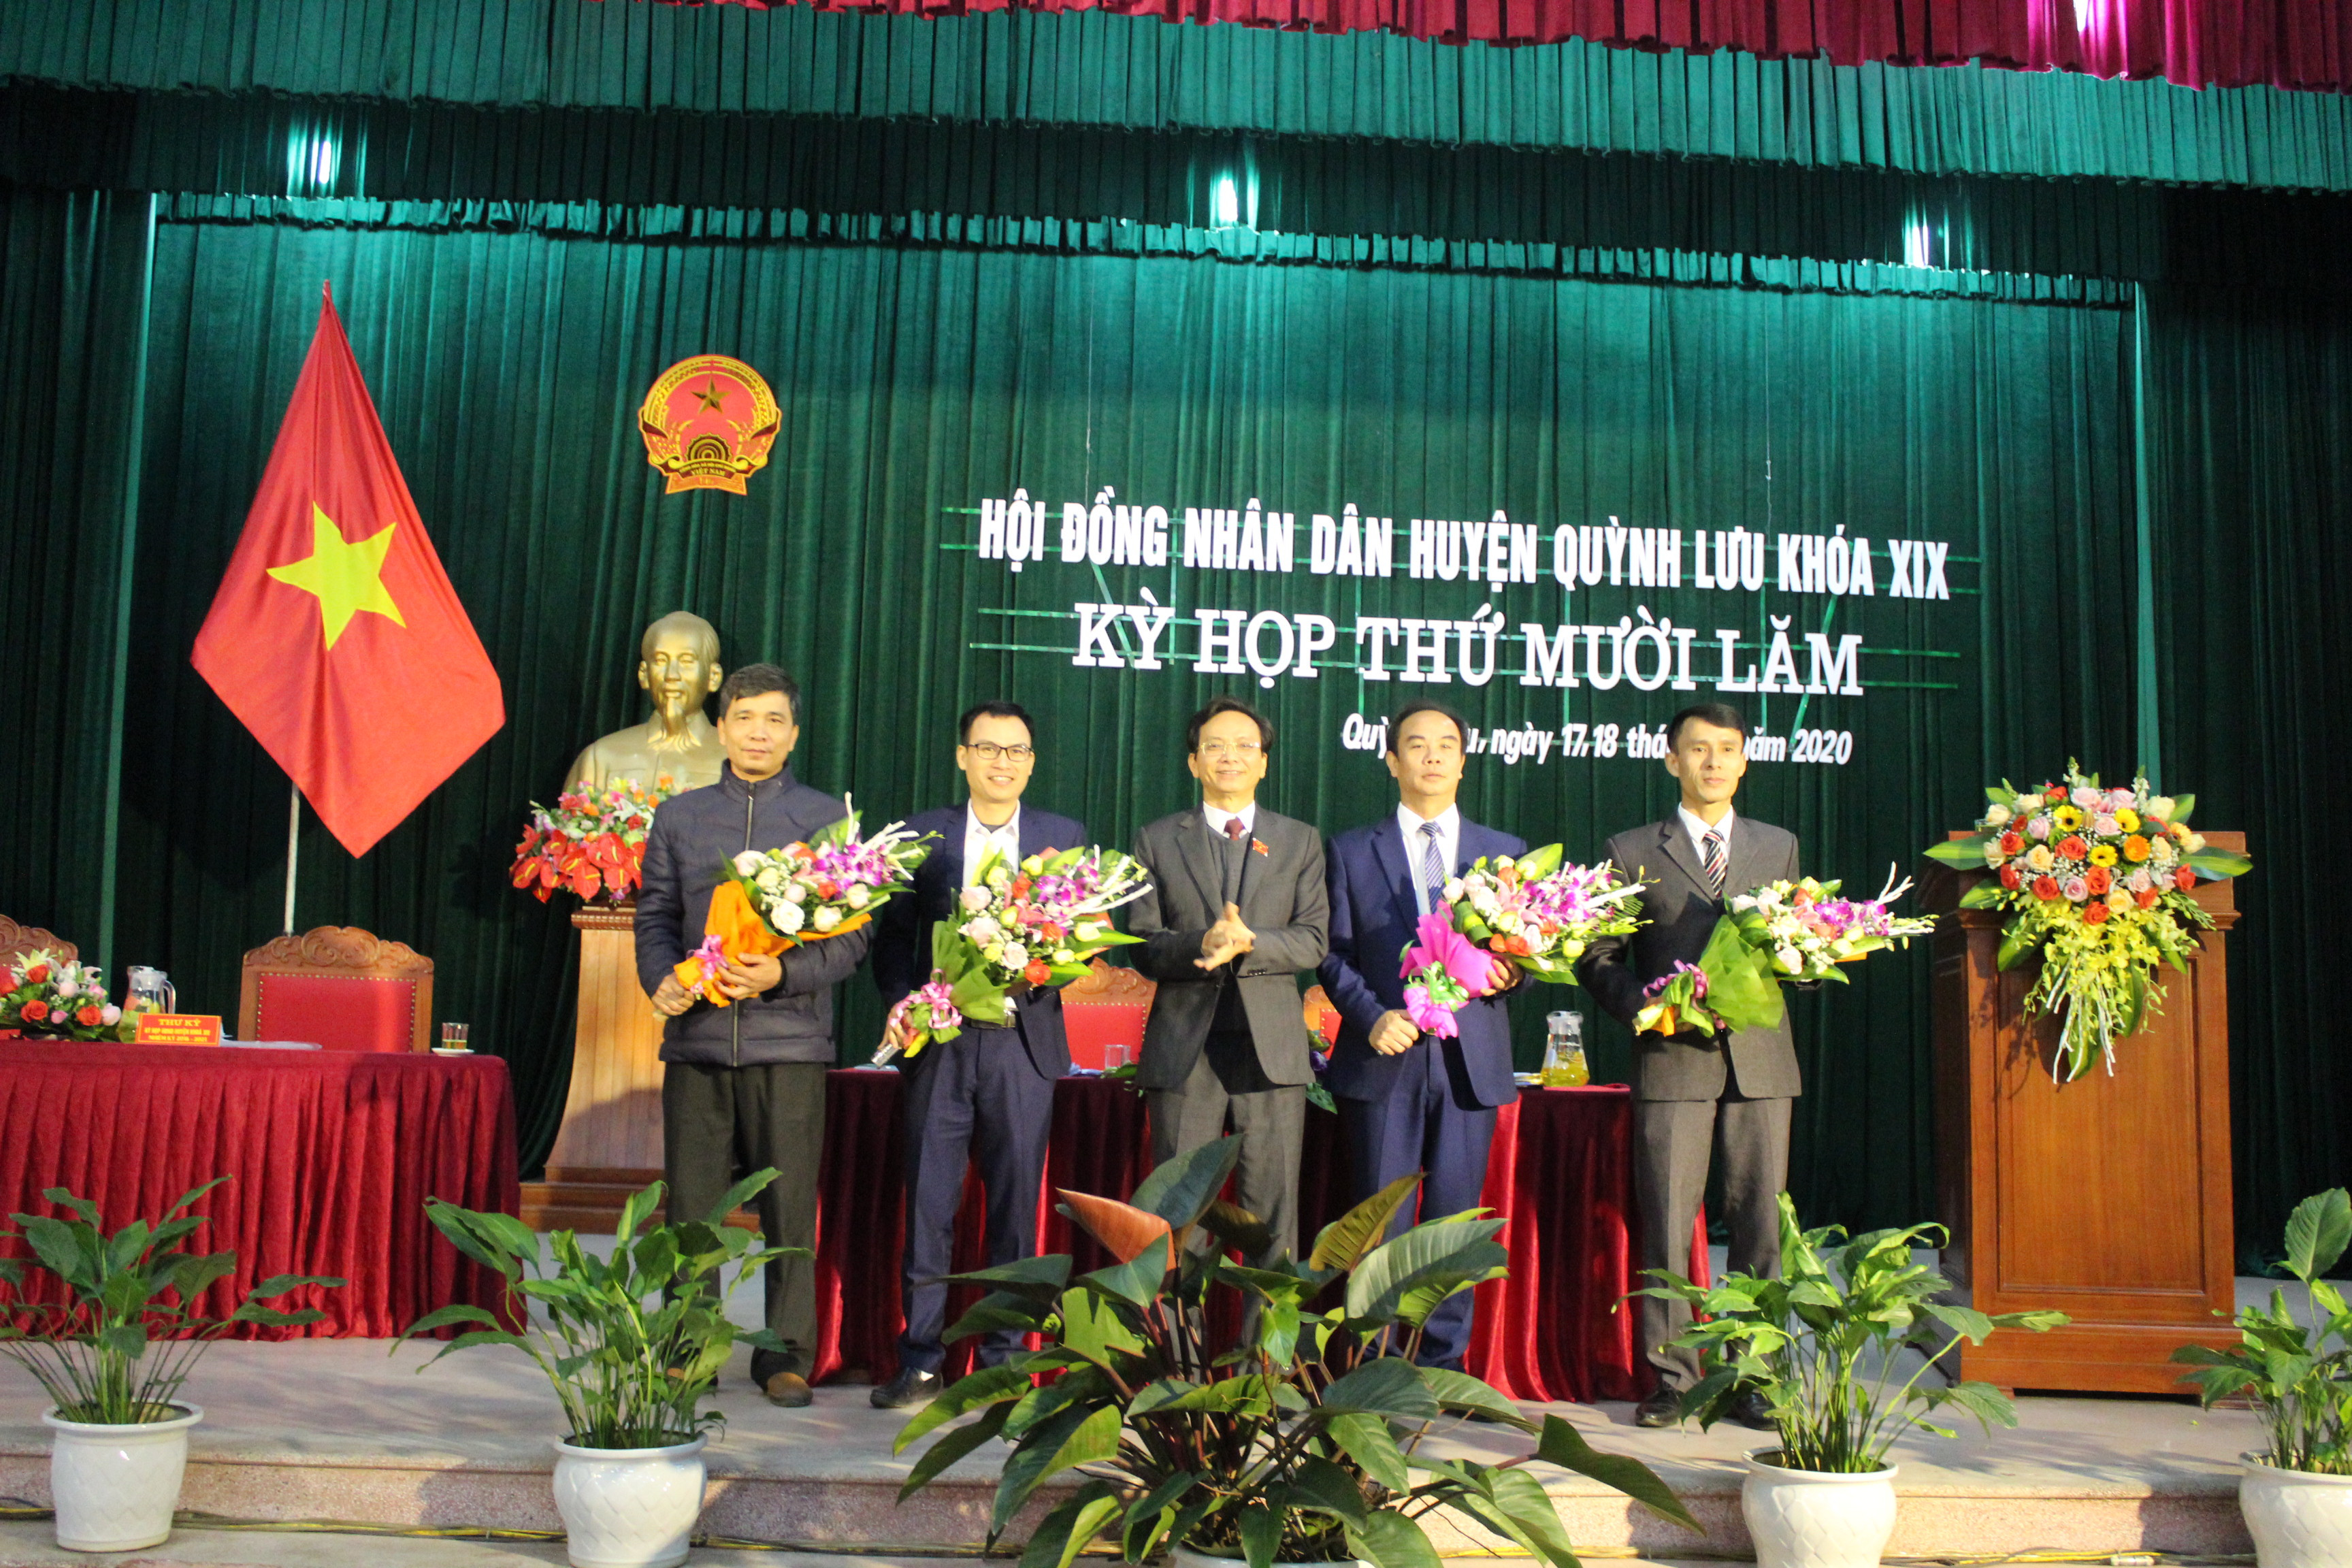 HĐND huyện Quỳnh lưu tặng hoa các thành viên UBND huyện vừa được bầu bổ sung. Ảnh Thanh Toàn